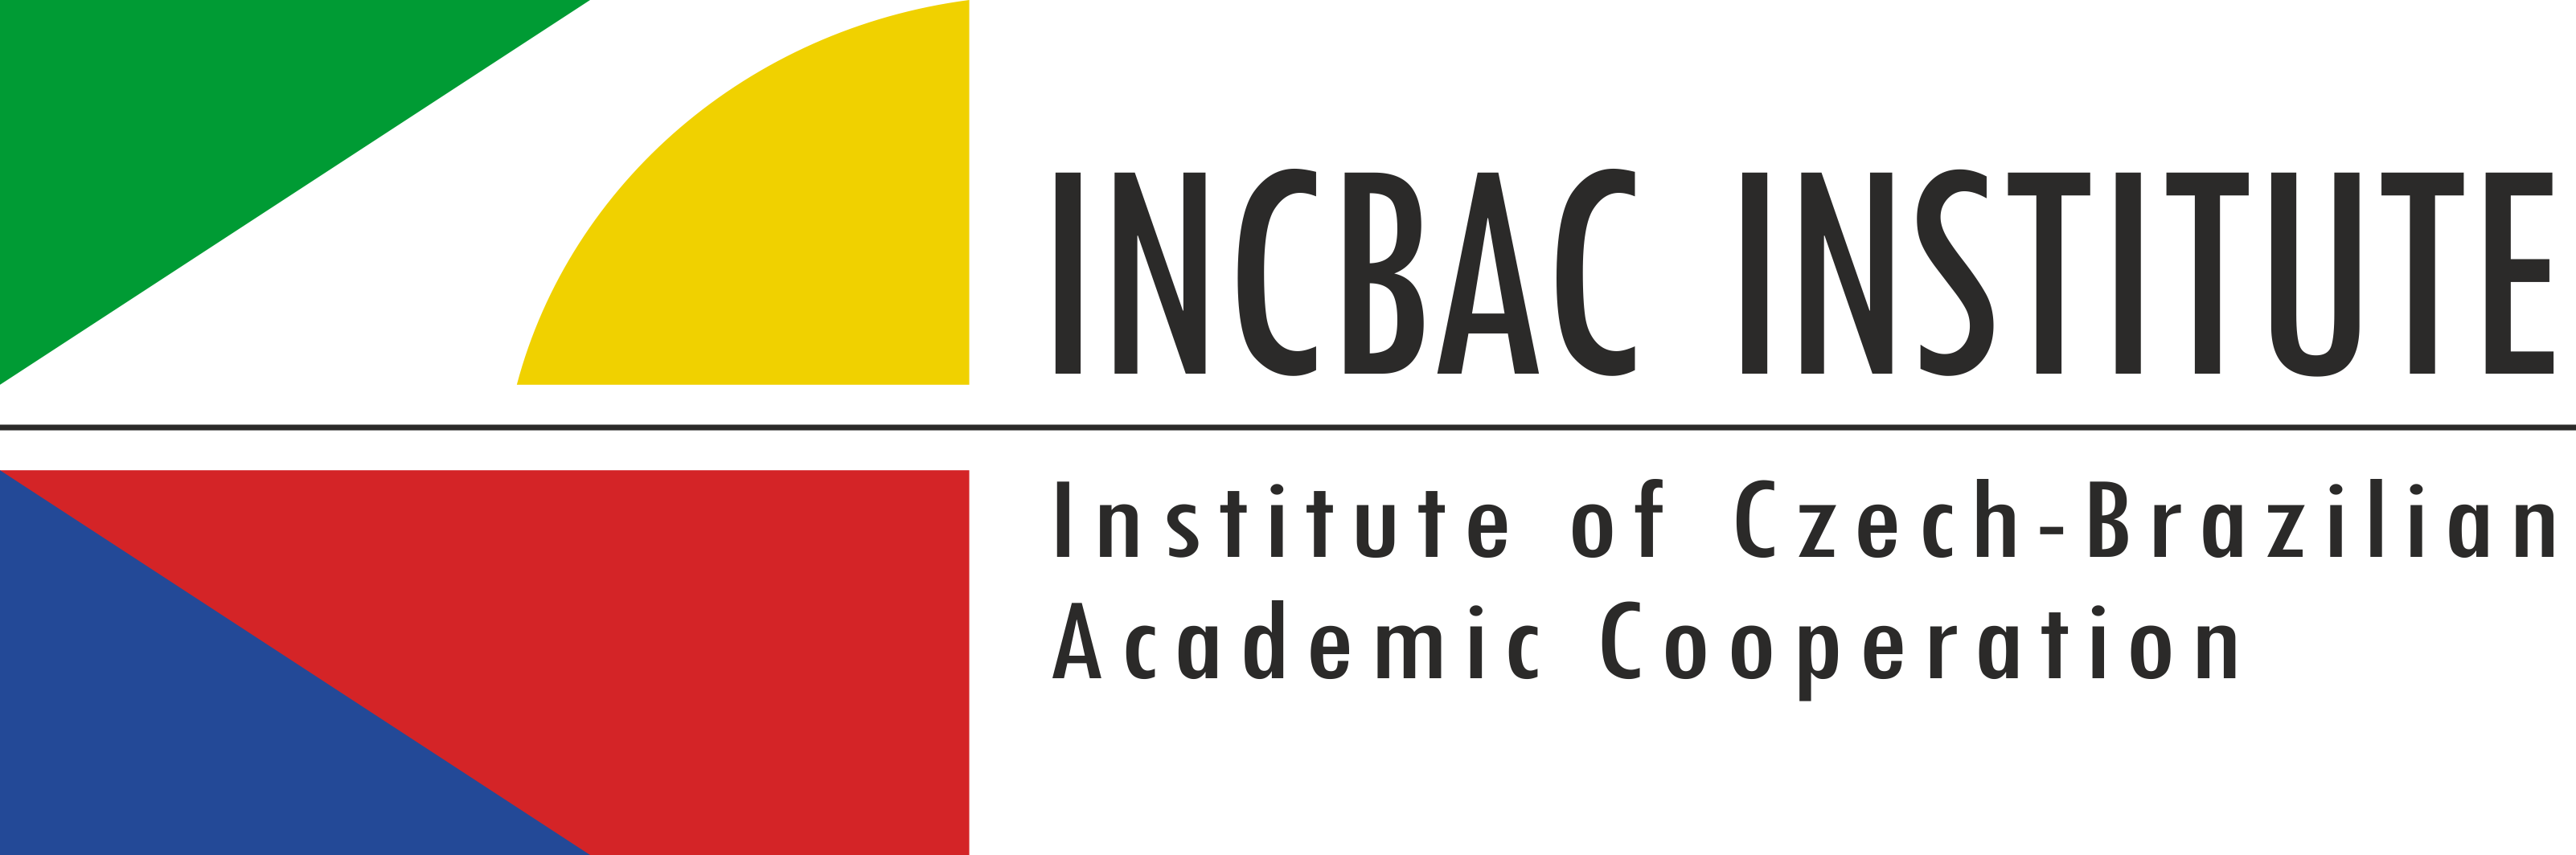 Logomarca do Instituto de Cooperação Acadêmica Tcheco-Brasileiro - INCBAC  